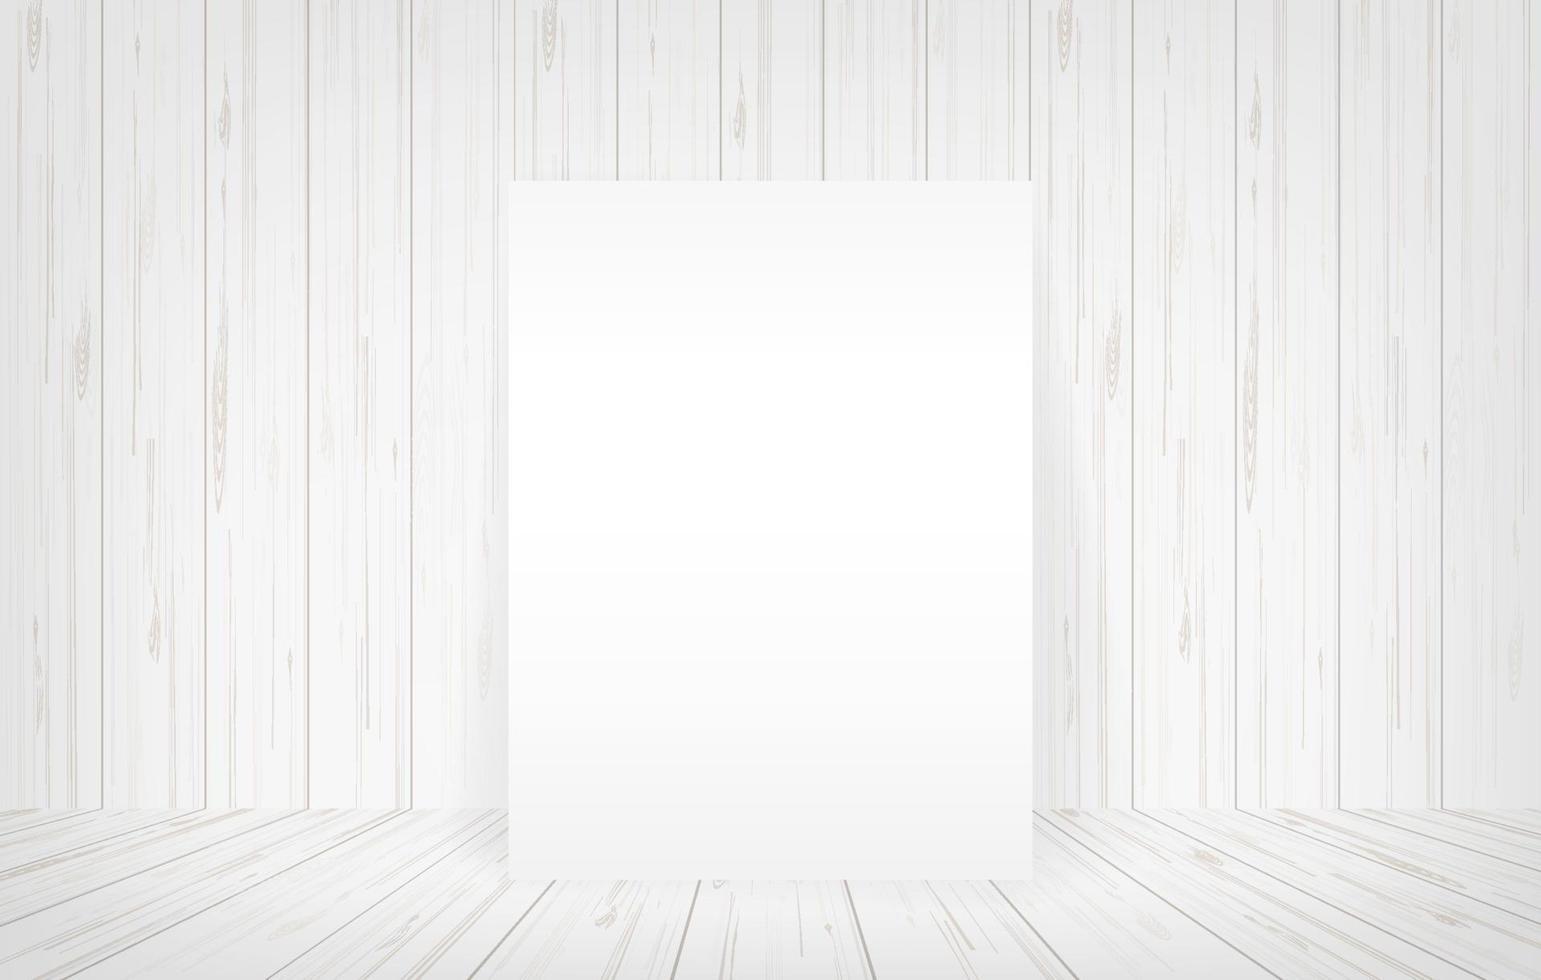 Marco de lienzo blanco en el fondo del espacio de la habitación. vector. vector